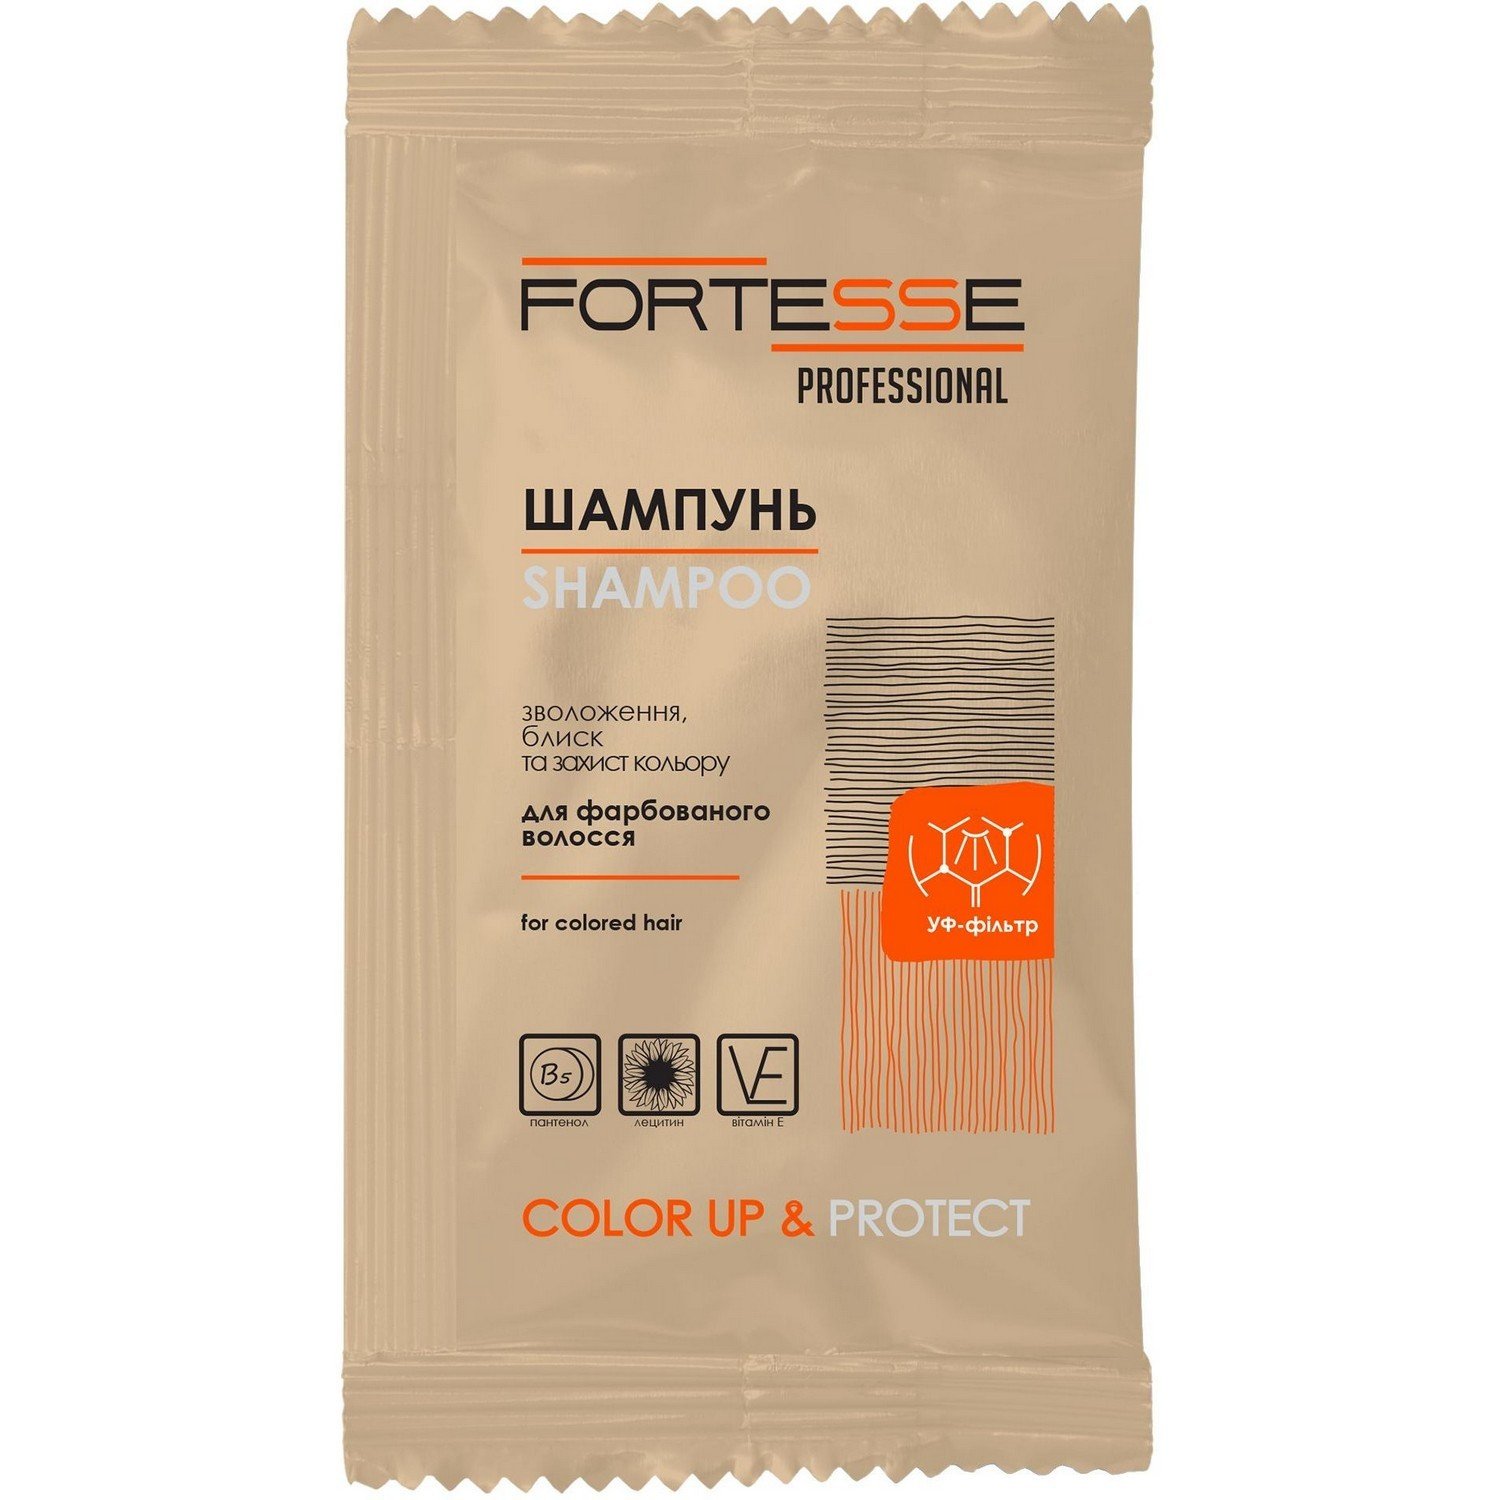 Шампунь Fortesse Professional Color Up & Protect Стійкість кольору, для фарбованого волосся, 15 мл - фото 1